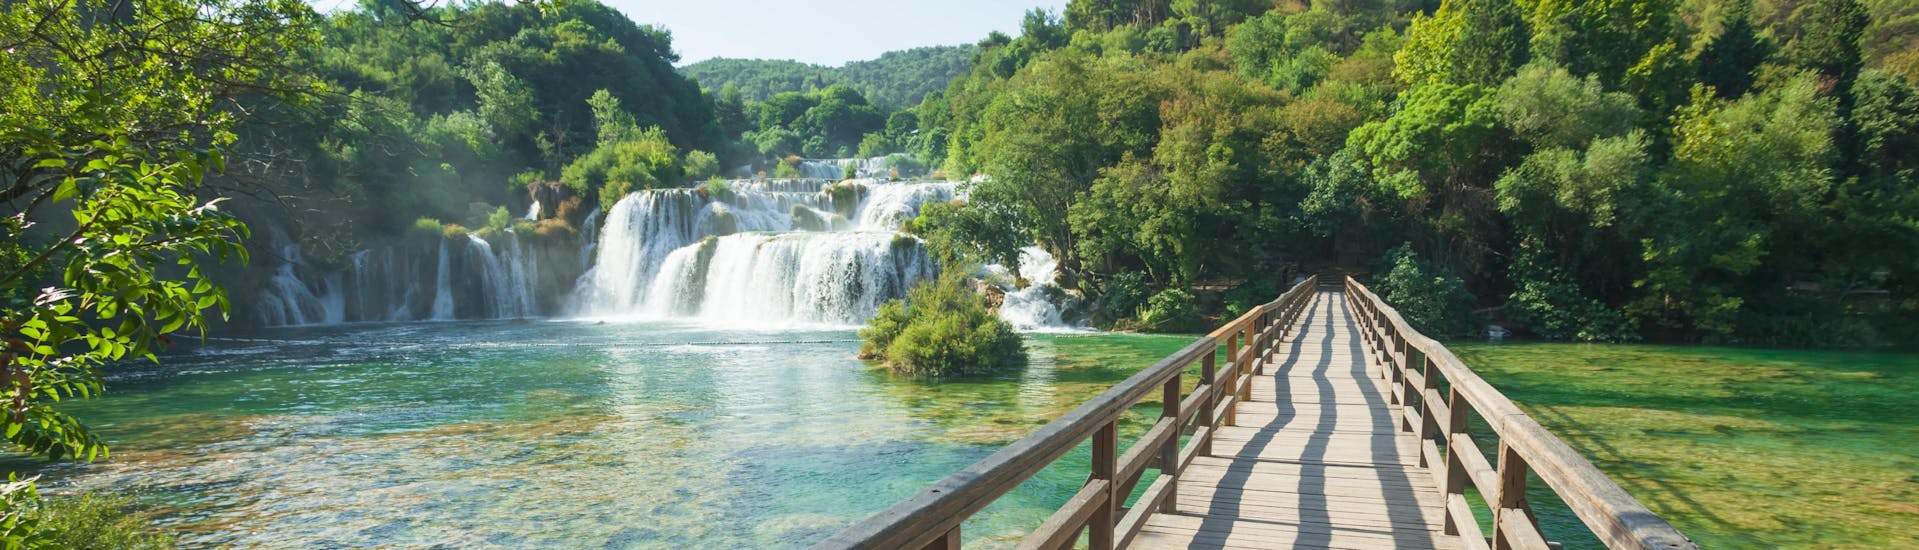 Imagen de las famosas cascadas del Parque Nacional de Krka, en Croacia.